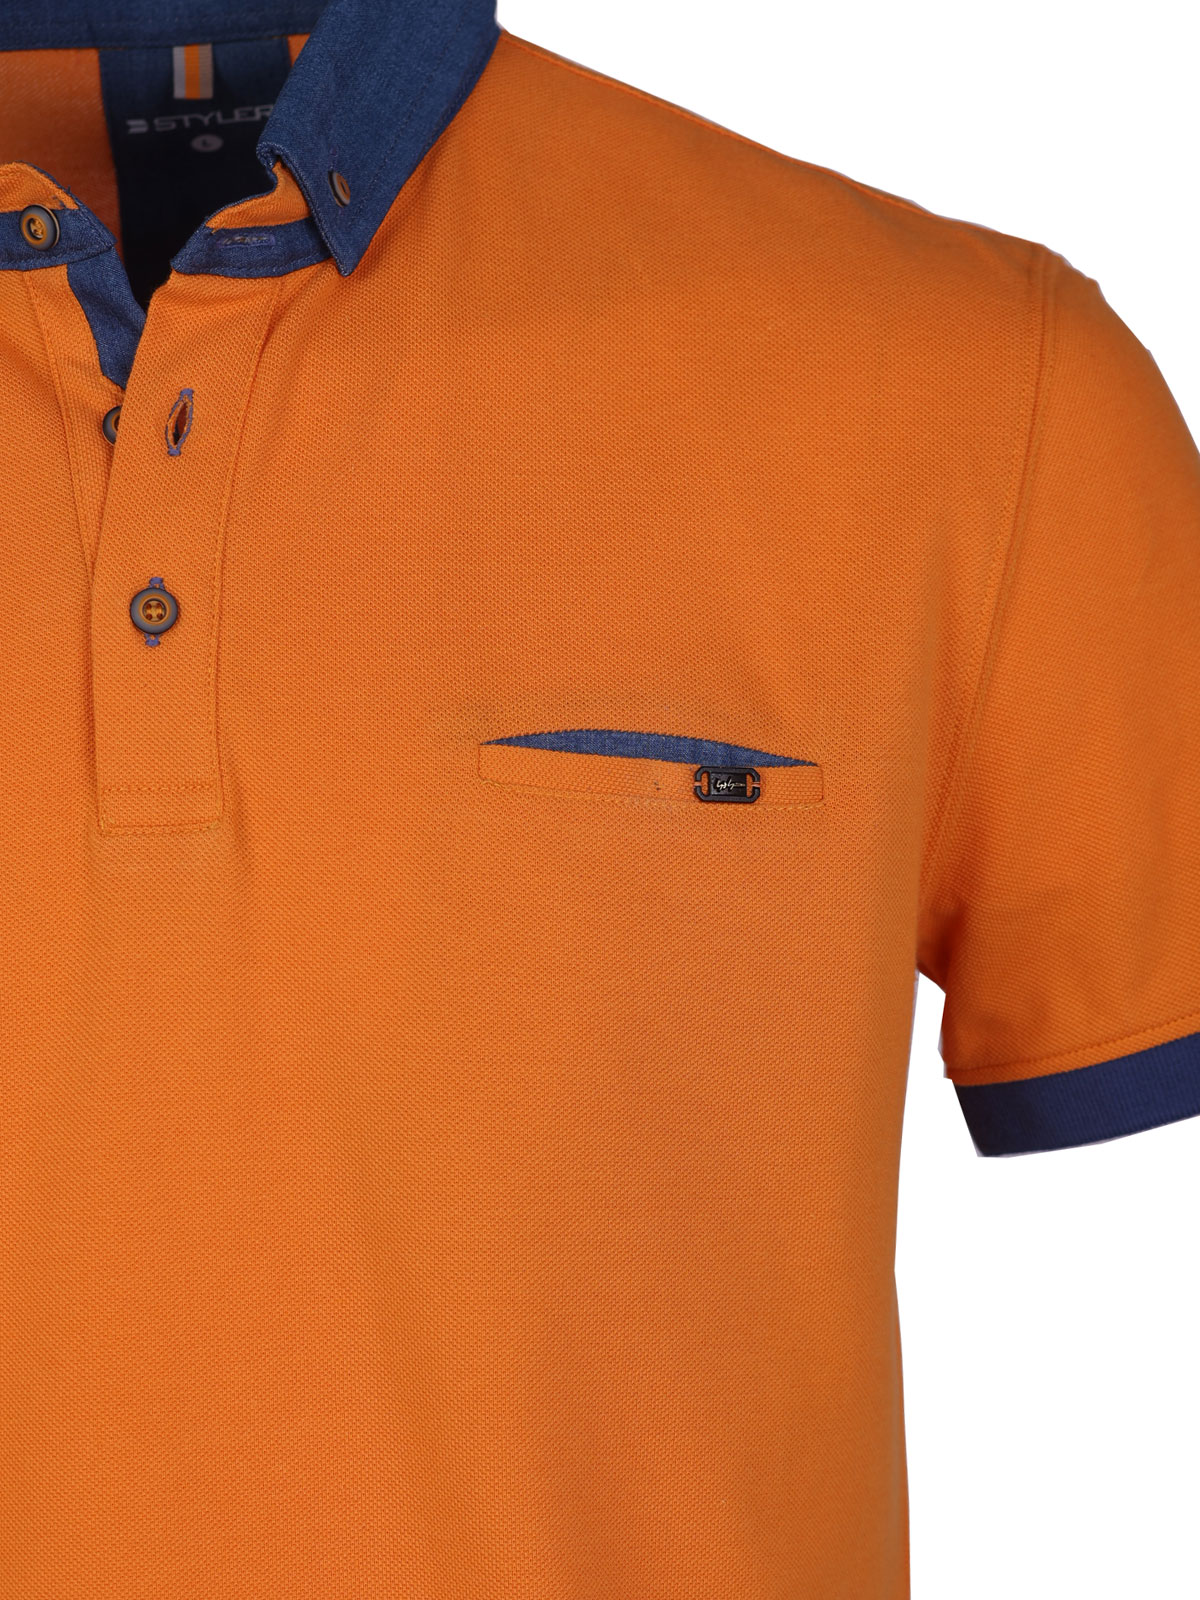 Μπλούζα σε πορτοκαλί χρώμα με τζιν γιακά - 93431 € 42.74 img2